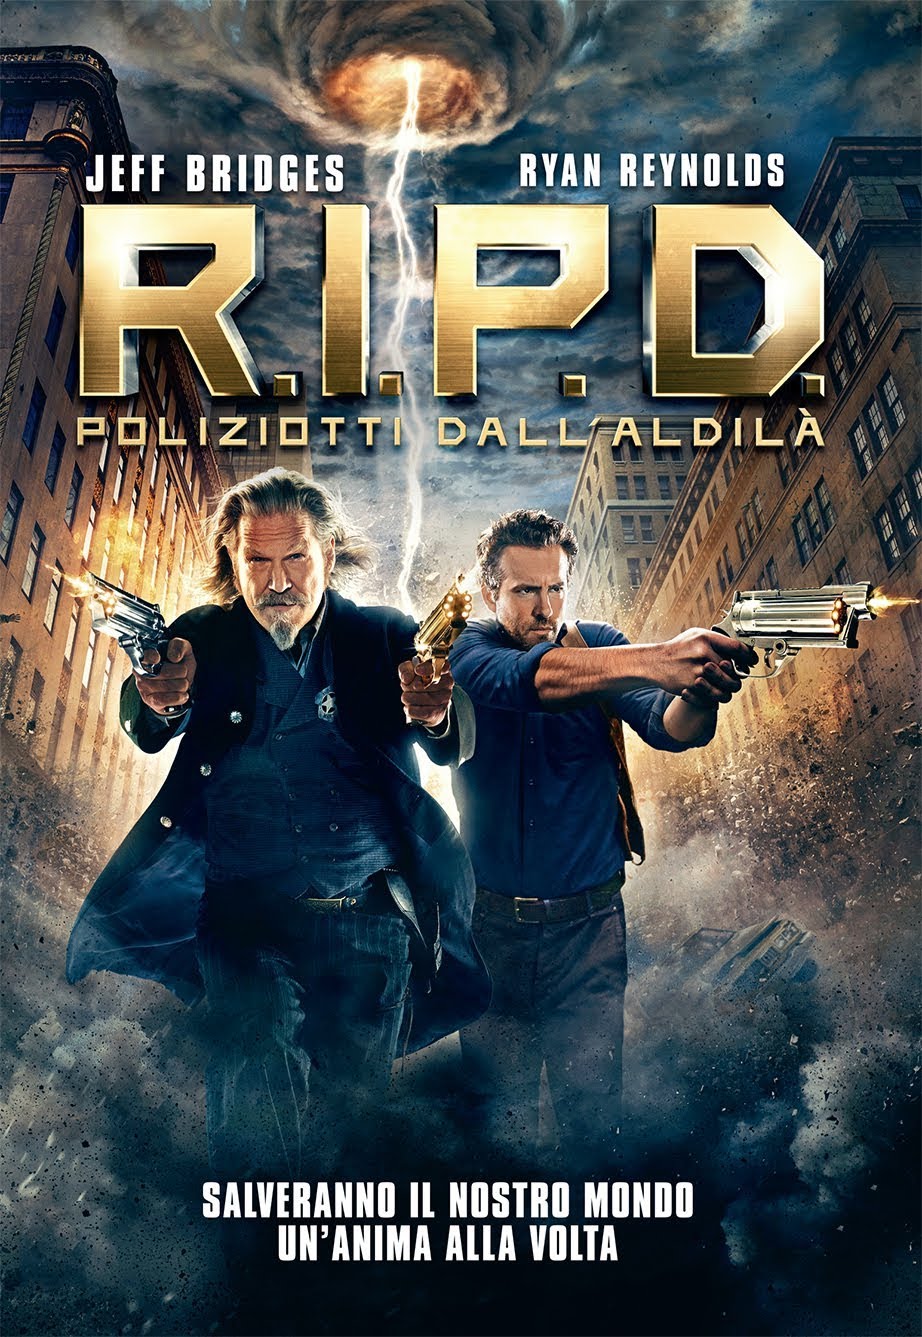 R.I.P.D. – Poliziotti dall’aldilà [HD/3D] (2013)